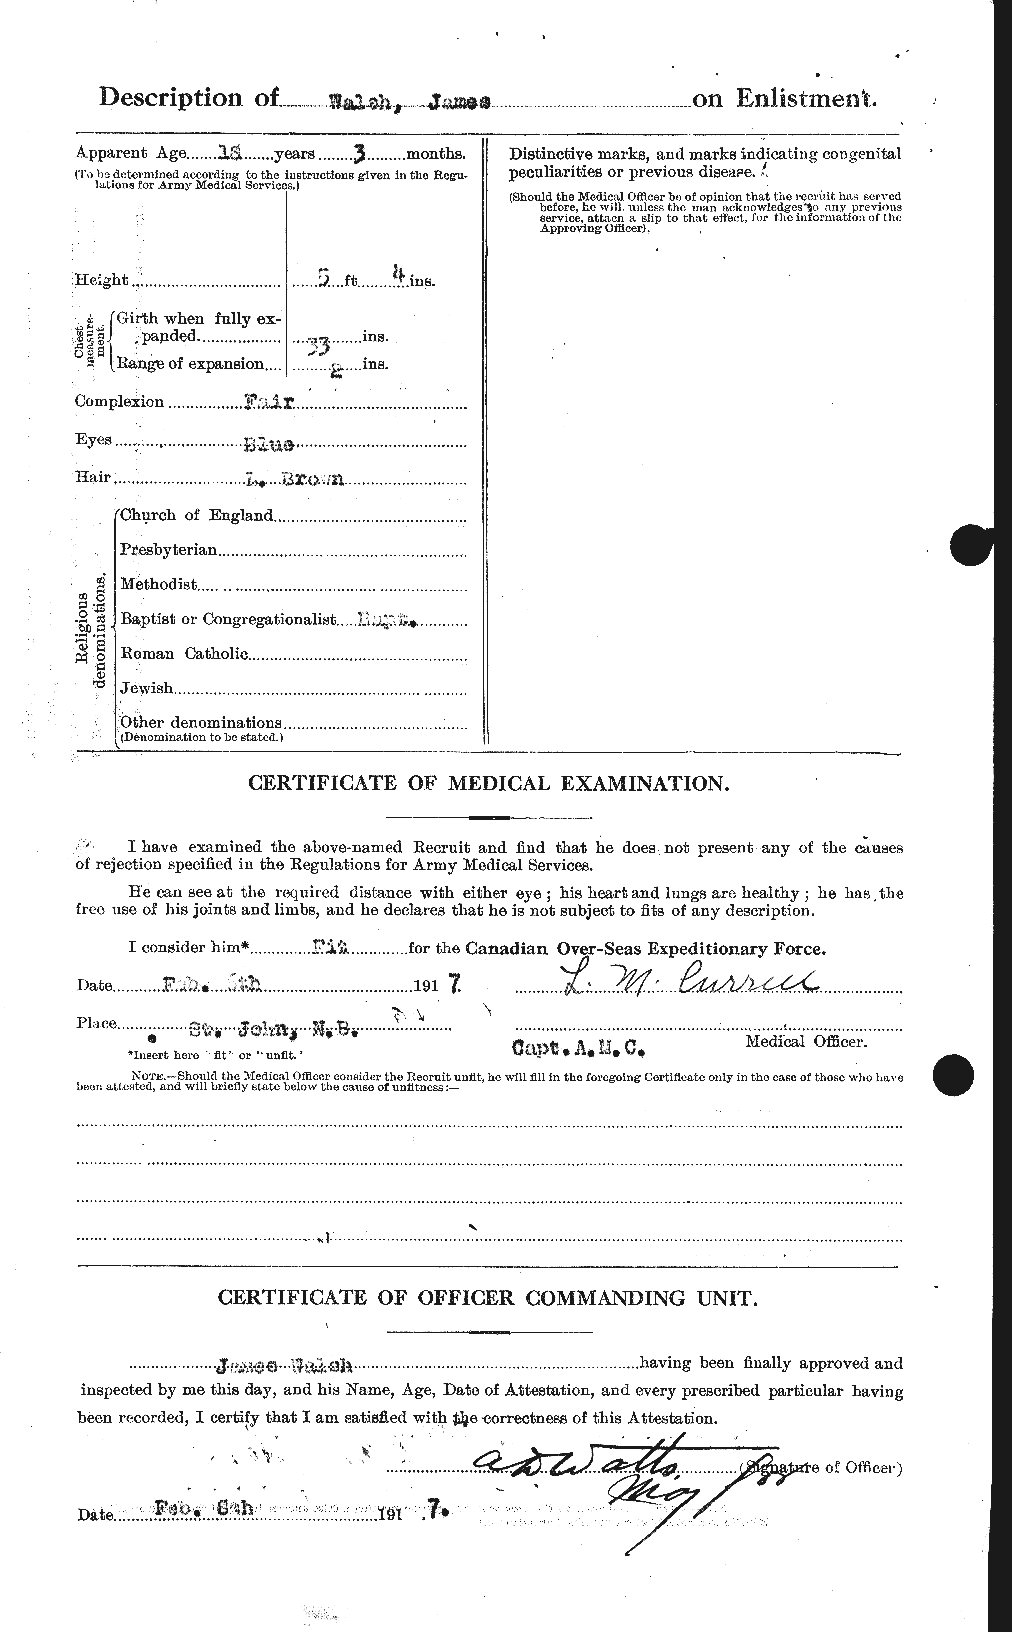 Dossiers du Personnel de la Première Guerre mondiale - CEC 653281b